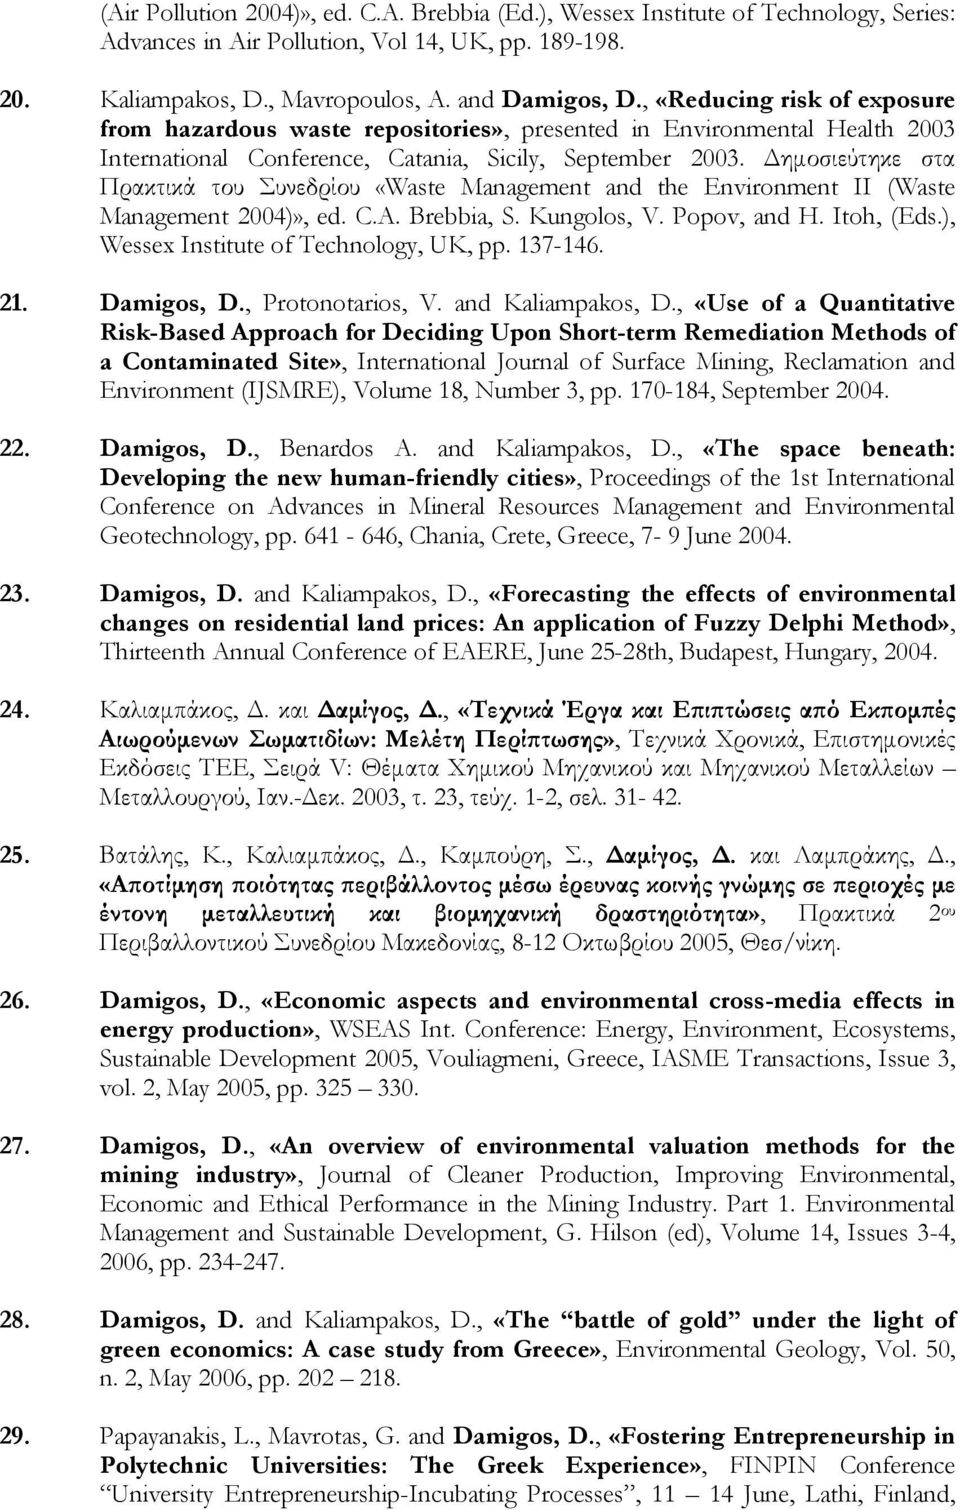 Δημοσιεύτηκε στα Πρακτικά του Συνεδρίου «Waste Management and the Environment II (Waste Management 2004)», ed. C.A. Brebbia, S. Kungolos, V. Popov, and H. Itoh, (Eds.